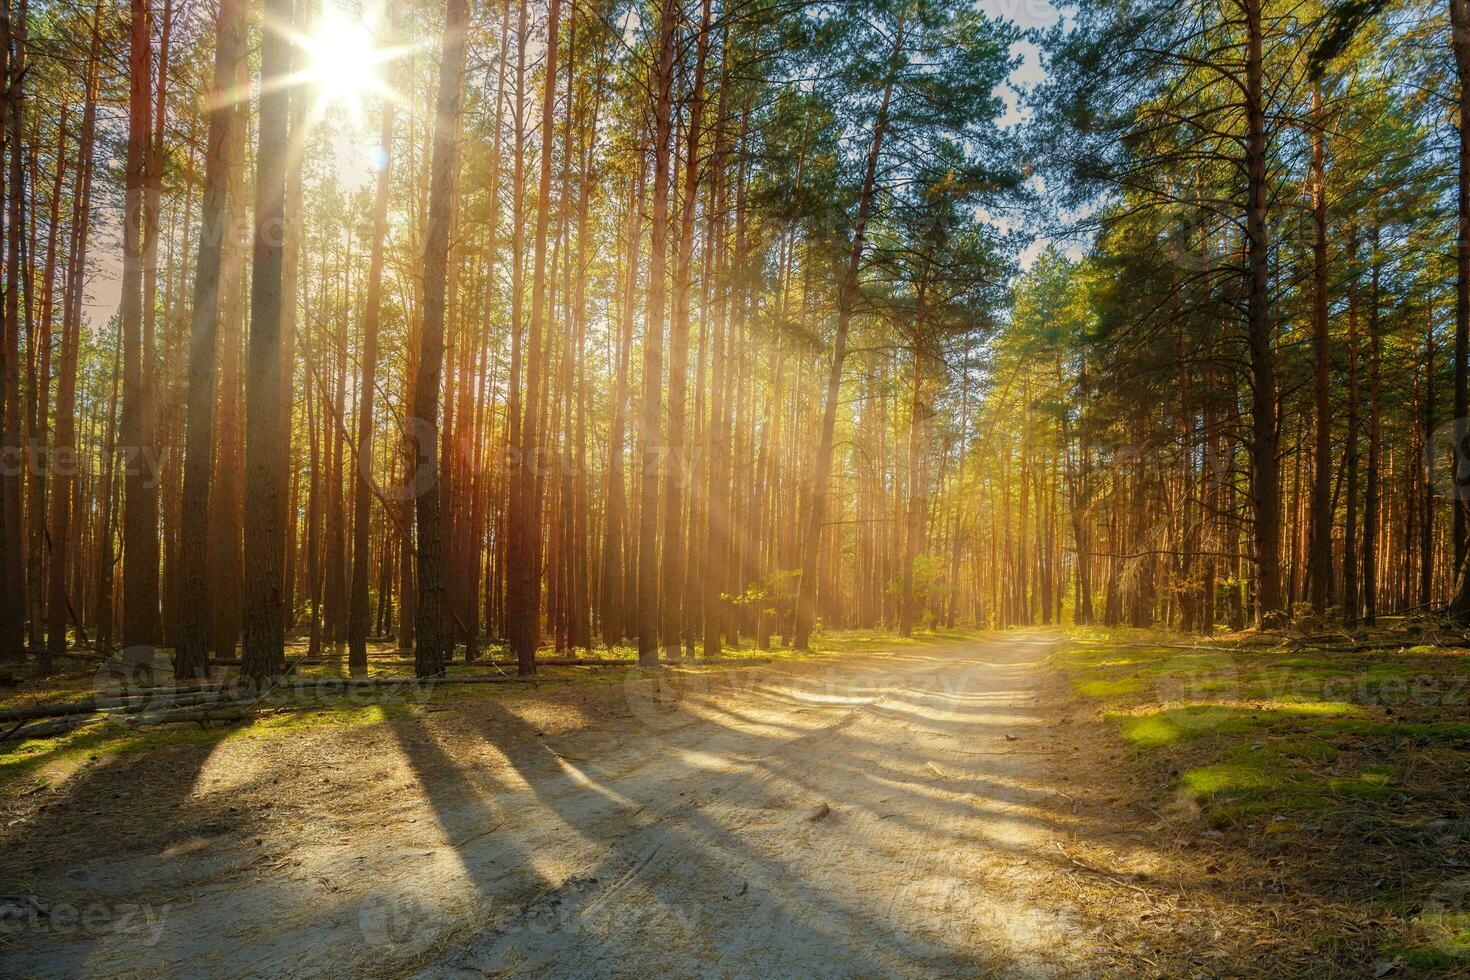 Sonnenstrahlen scheinen durch das Bäume auf zu ein leeren Straße im ein Kiefer Wald. foto